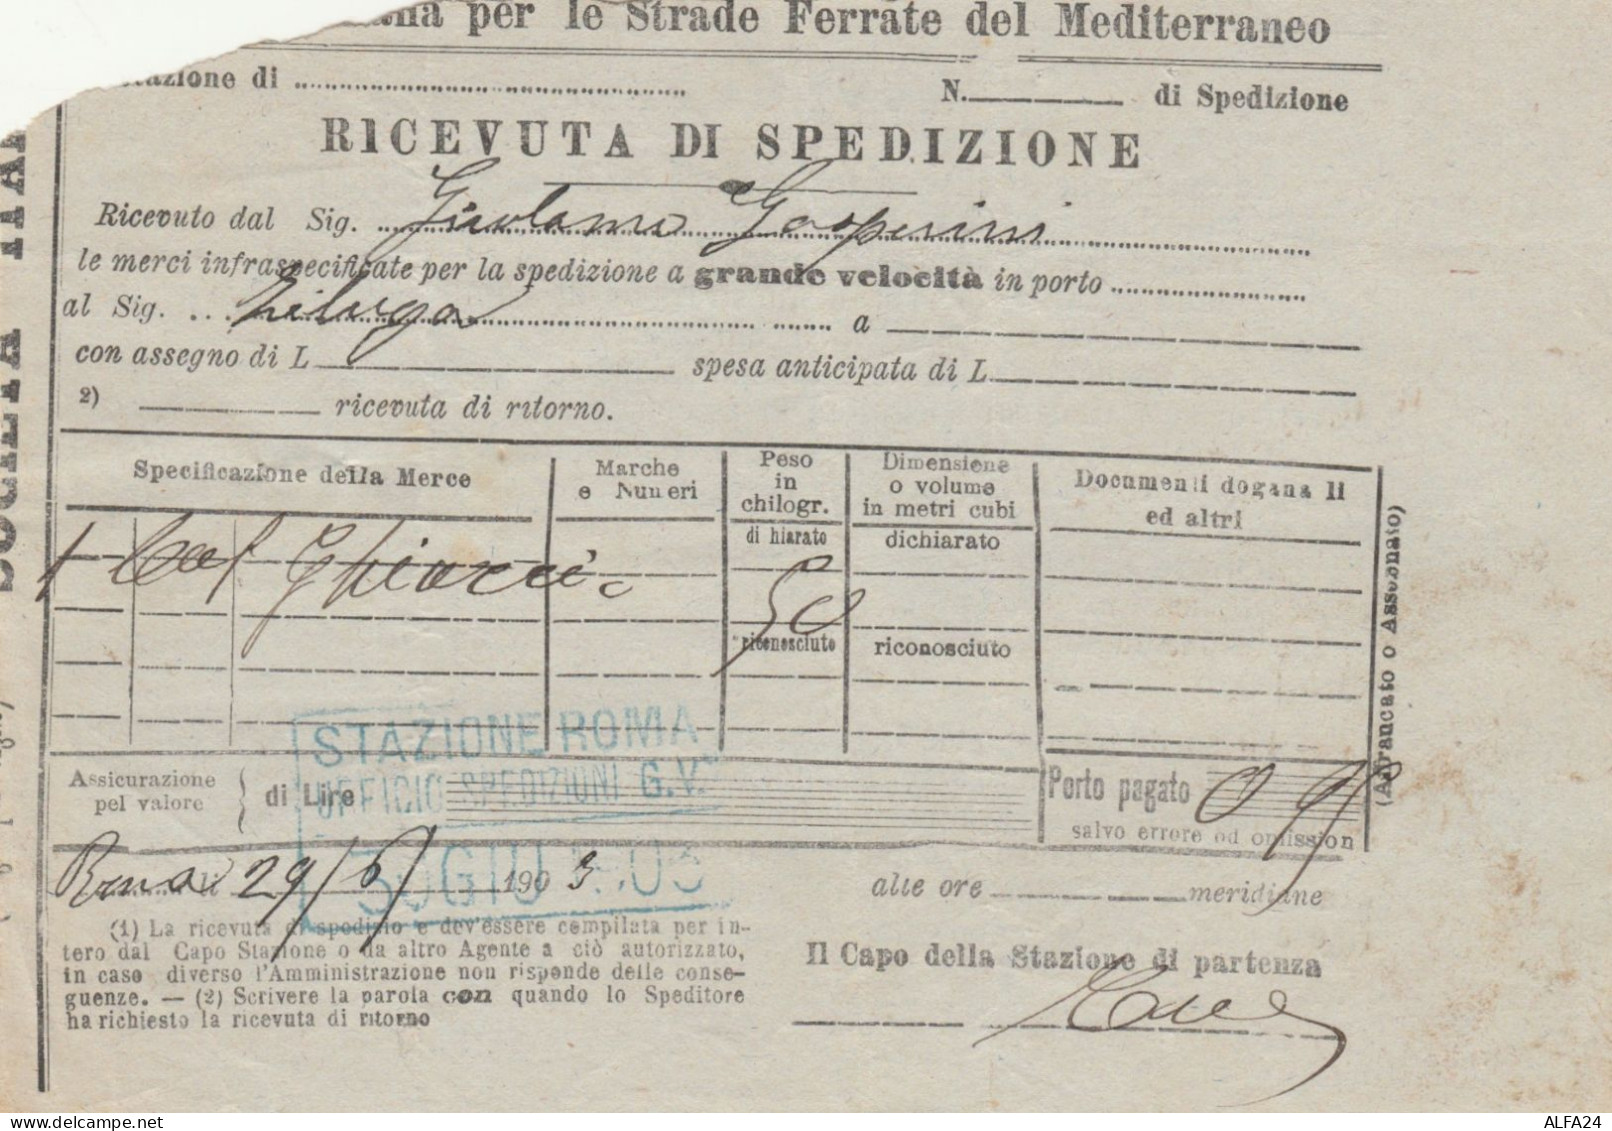 RICEVUTA SPEDIZIONE TRENO 1903 STRADE FERRATE DEL MEDITERRANEO (XF331 - Europe